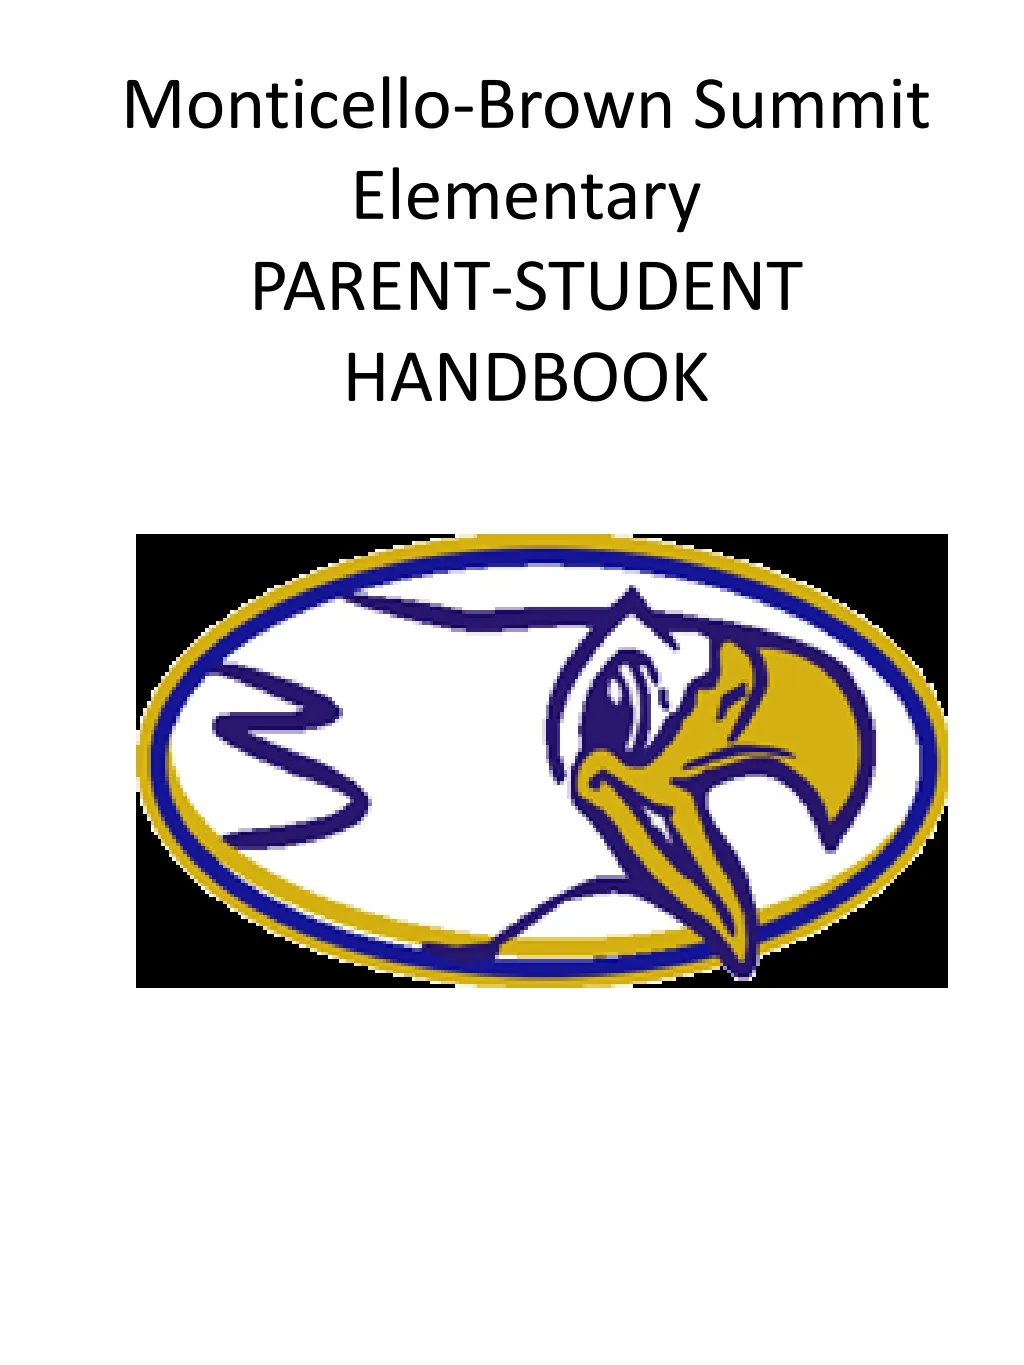 monticello brown summit elementary parent student handbook